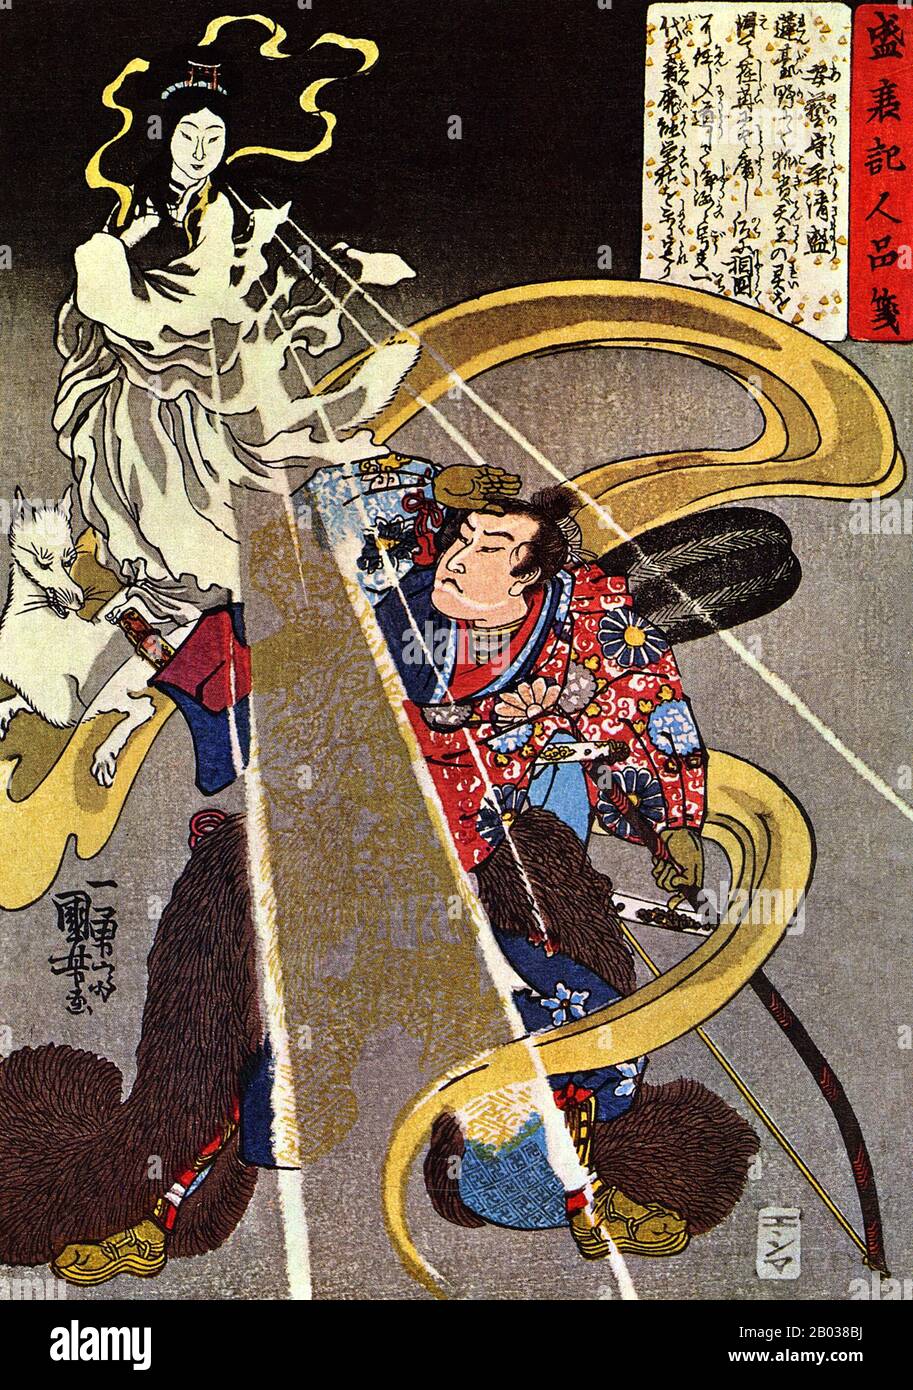 Inari Okami, noto anche come Oinari, è una divinità dello Shintoismo, il kami delle volpi, della fertilità, del riso, del tè, del sake, dell'agricoltura, dell'industria e della prosperità generale. In tempi precedenti, Inari era anche il patrono dei mercanti e dei fabbri di spada, ed è stato rappresentato in varie forme d'arte come maschio, femmina o androgino. Inari è quasi sempre accompagnato da volpi bianchi (kistune), che agiscono come suoi messaggeri. Gli aspetti maschili e femminili di Inari sono stati spesso conflated o identificati con altre divinità Shinto e buddiste, e Inari lui/lei/themself è stato visto a volte come collettivo piuttosto che come in Foto Stock